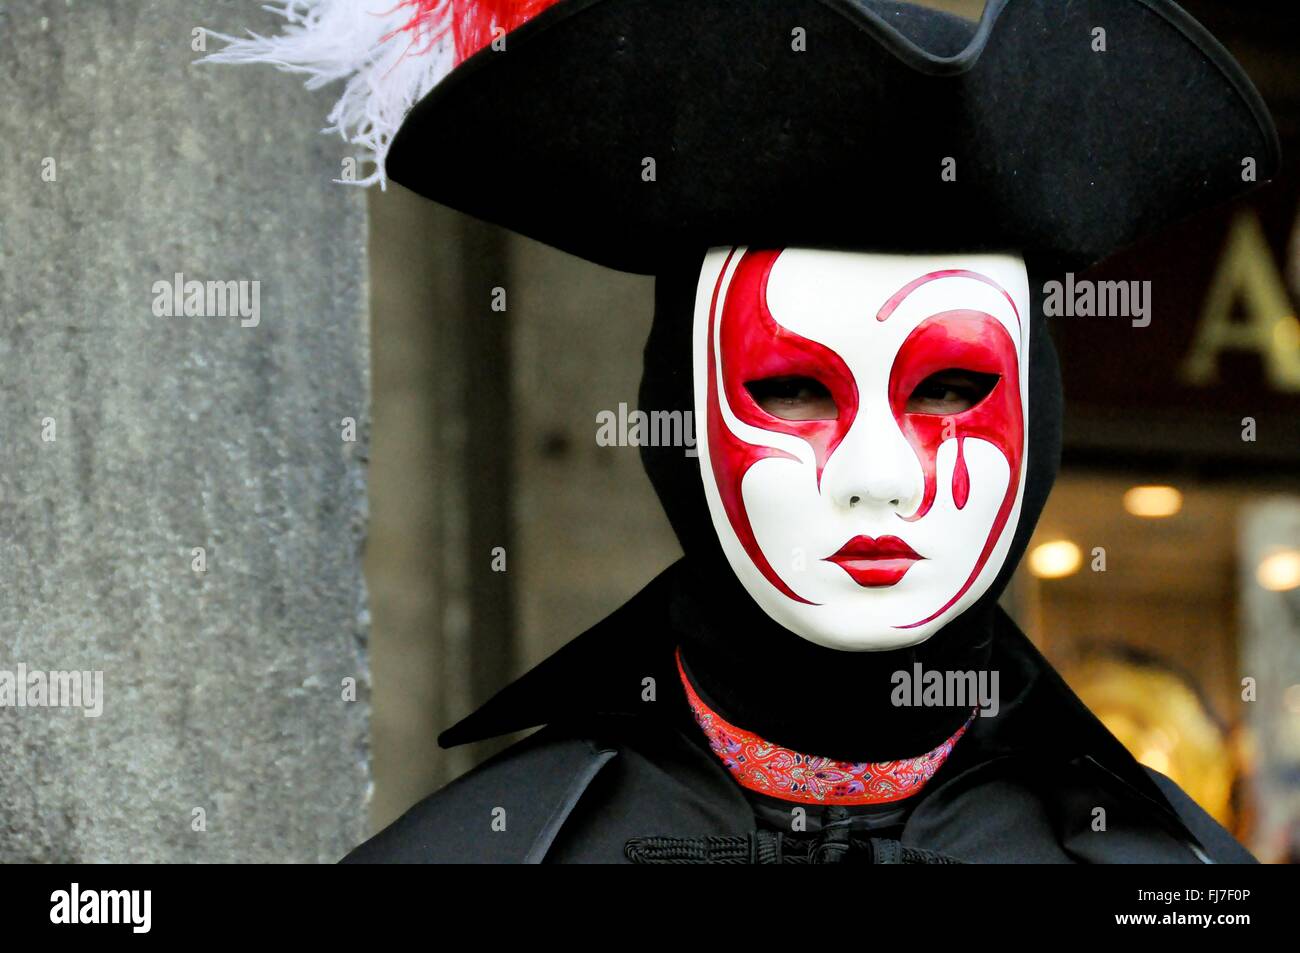 Eine Frau trägt eine aufwendige venezianische Maske und Kostüm während des jährlichen Karnevals von Venedig in Venedig, Italien. Karneval läuft offiziell für 10 Tage auf die christliche Feier der Fastenzeit endet. Stockfoto